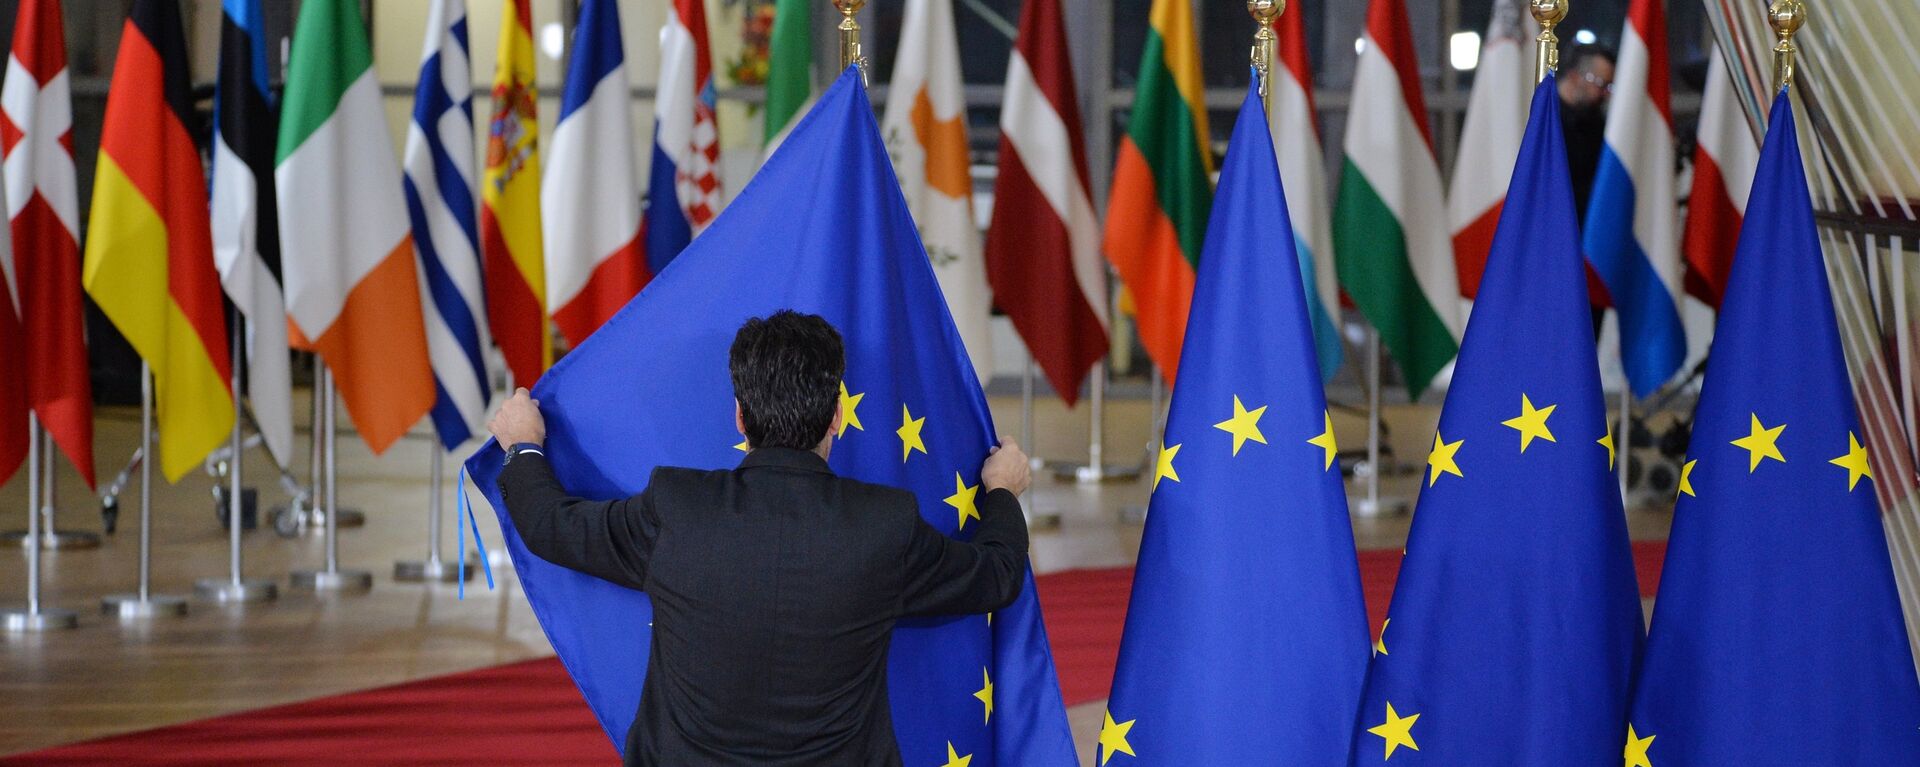 Las banderas de los países de la UE y bandera de la UE en Bruselas - Sputnik Mundo, 1920, 16.11.2020